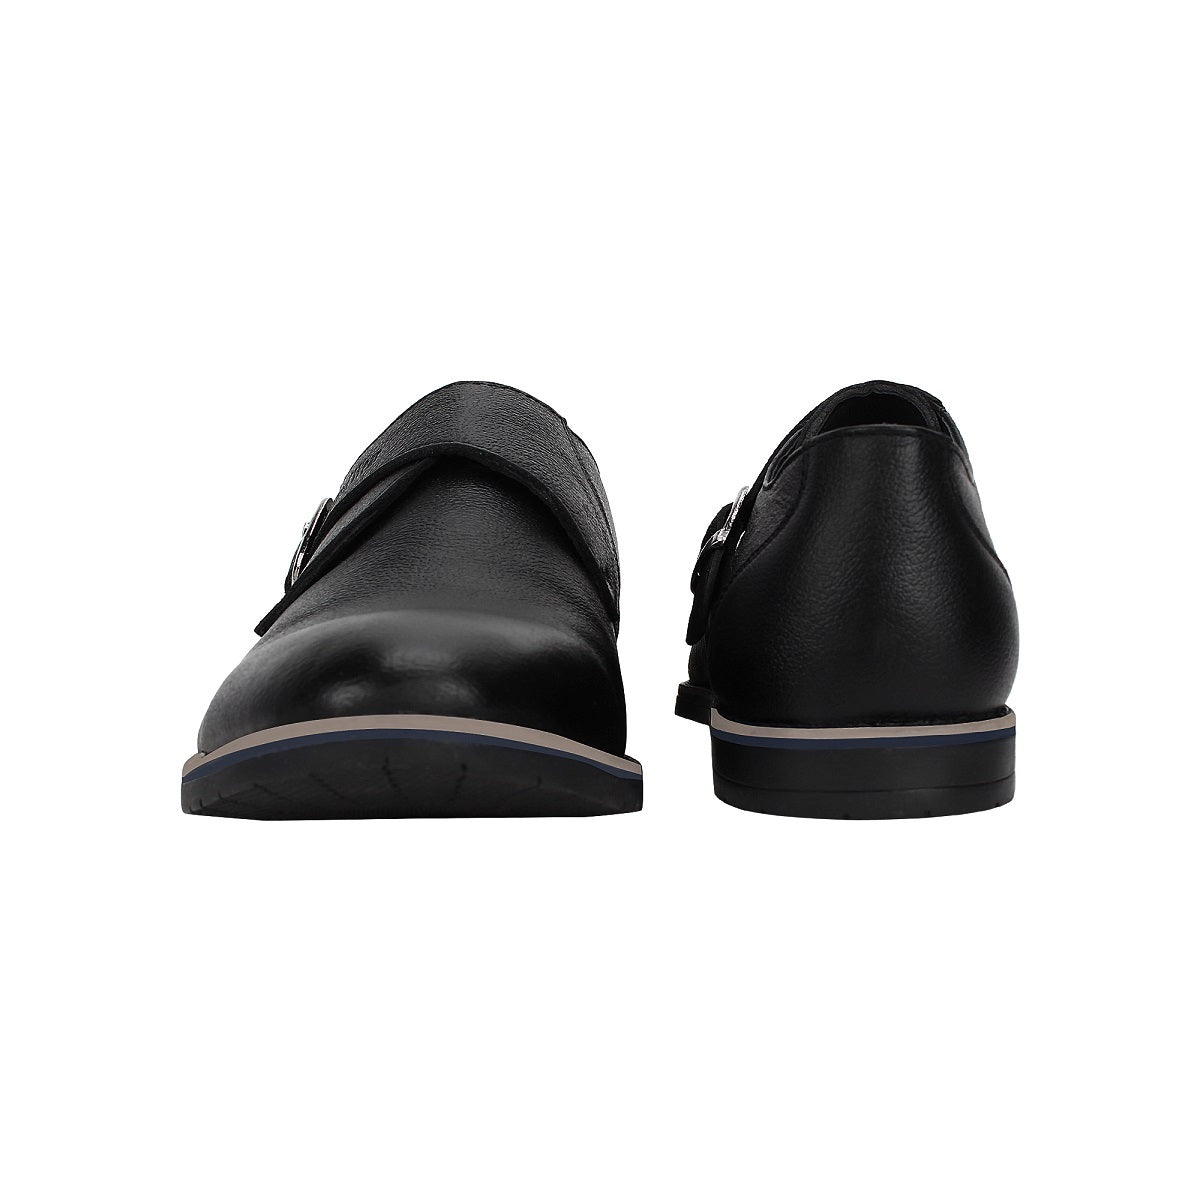 Monk Strap Shoes for Men - Defective